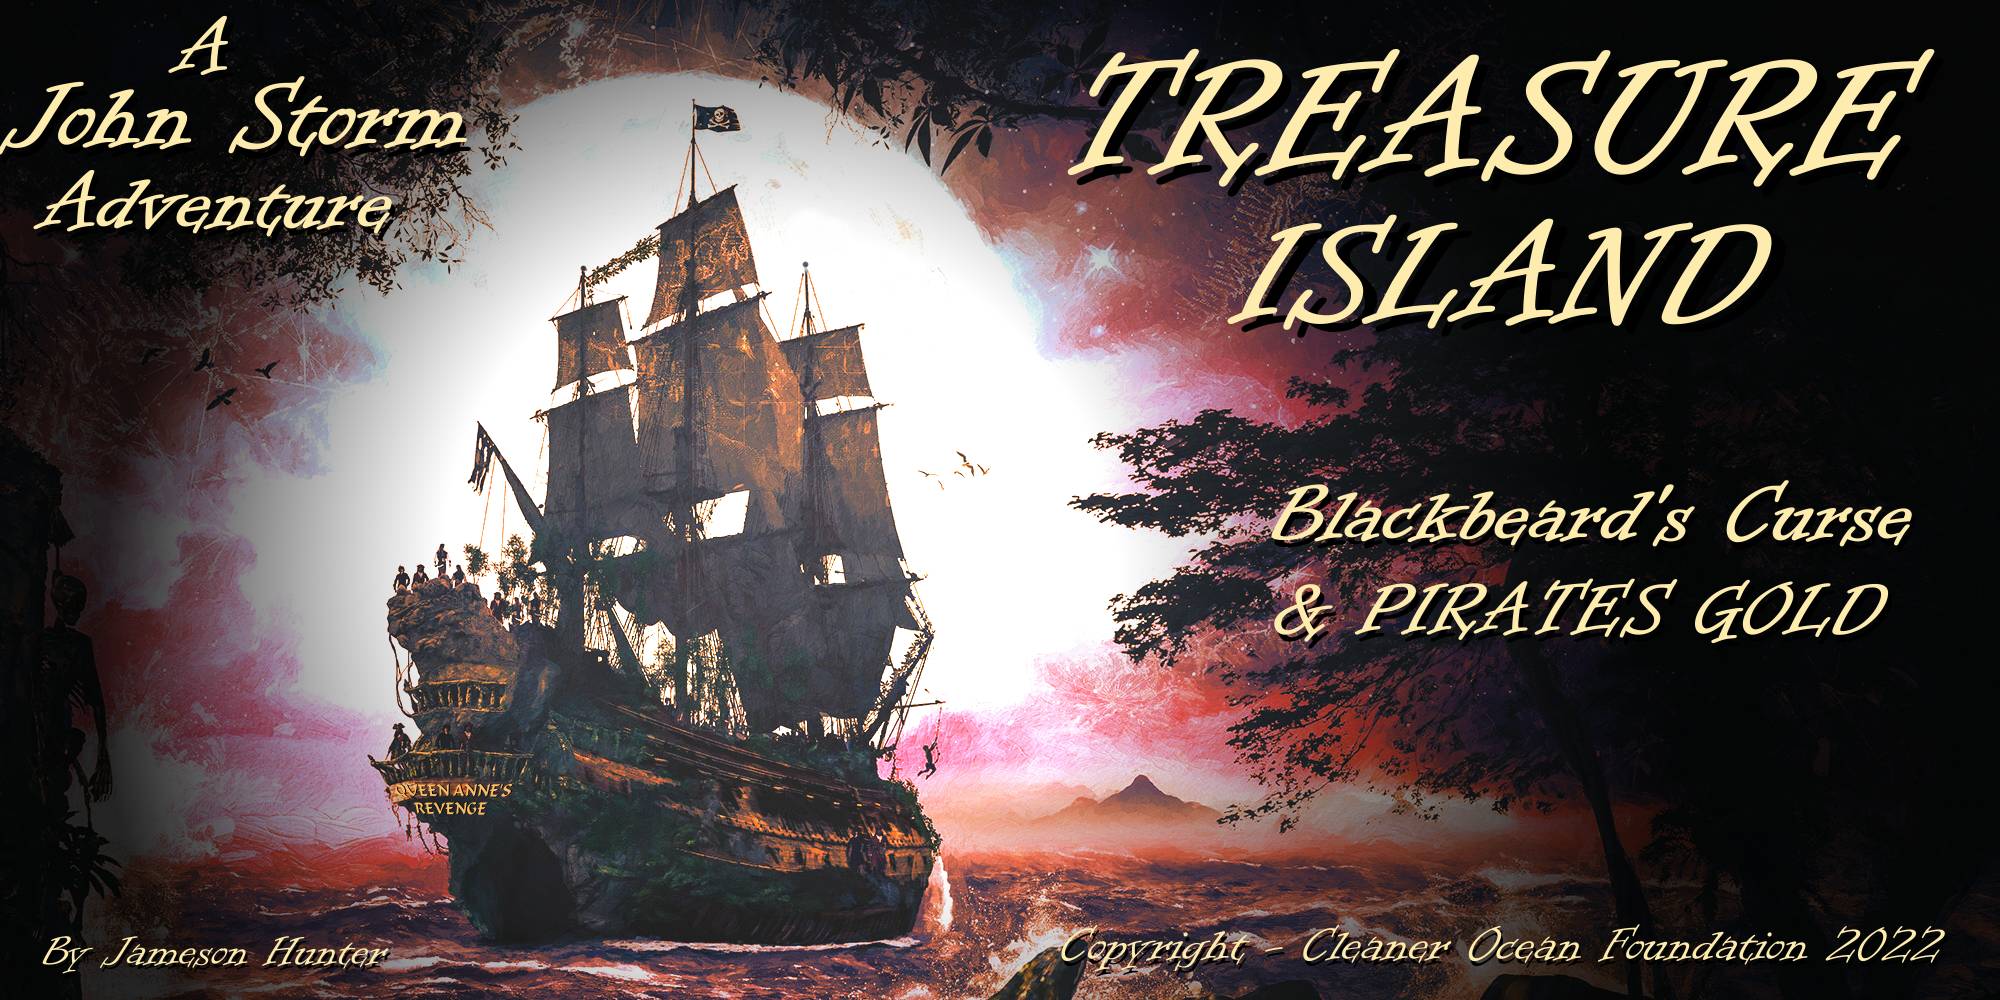 Blackbeard's Curse & Pirate's Gold, the search for Treasure Island